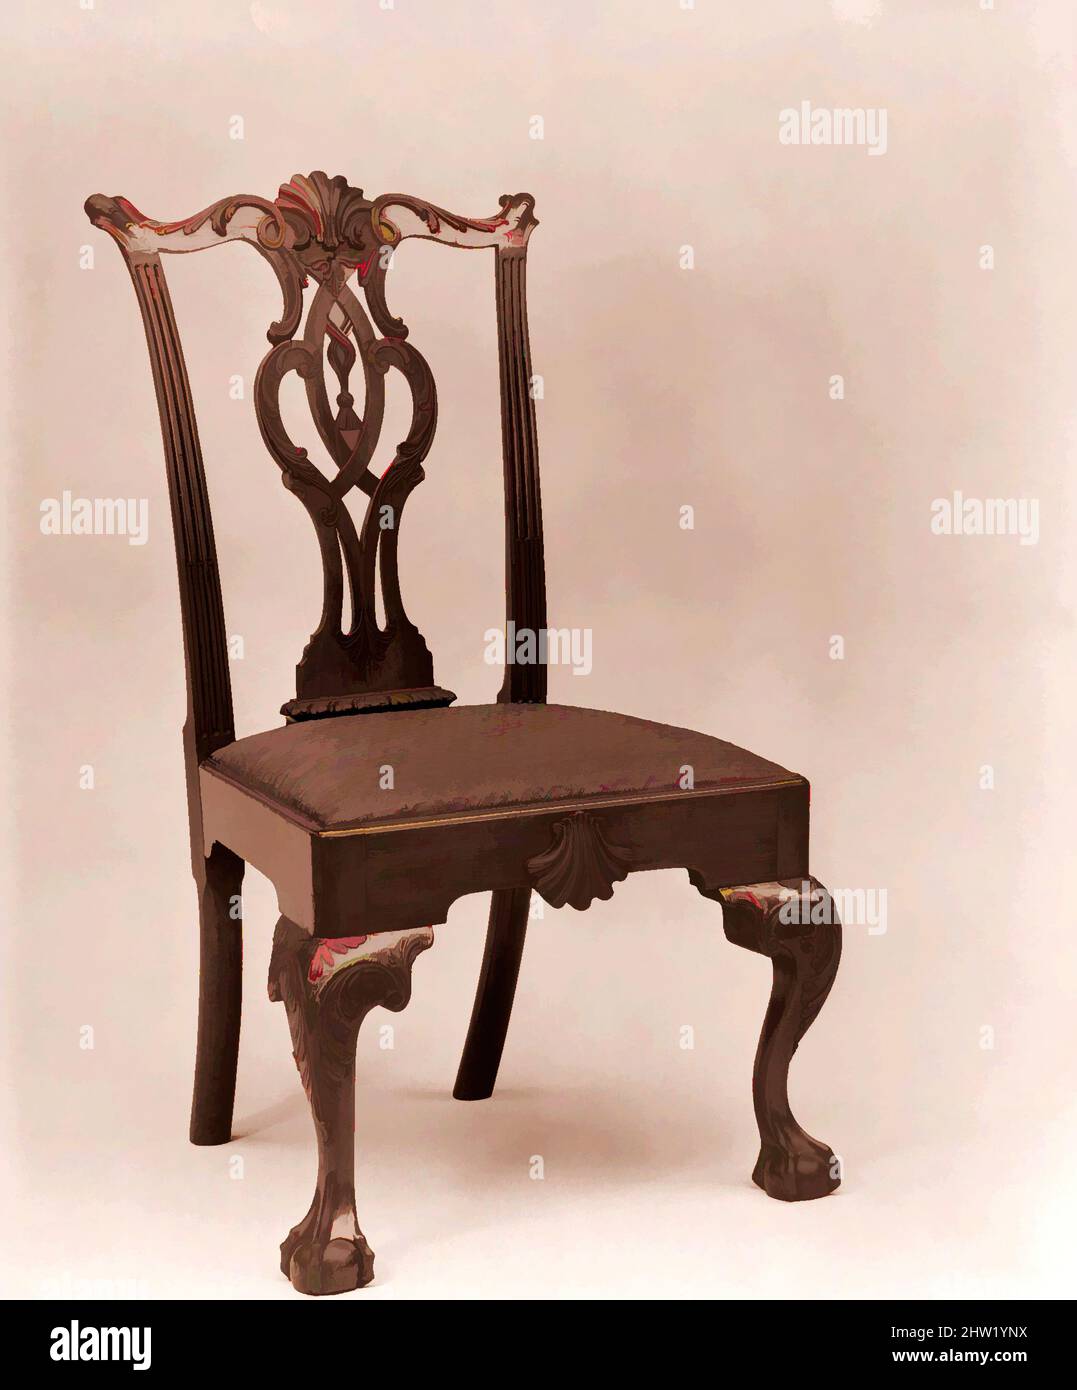 Art Inspired by SIDE Chair, 1760–90, made in Philadelphia, Pennsylvania, Stati Uniti, Americano, mogano, pino bianco, 40 1/2 x 21 3/4 x 21 1/4 pollici (102,9 x 55,2 x 54 cm), Furniture, questa sedia rappresenta il tipo di Splat Filadelfia scrolled-stropwork al suo meglio raffinato. Le opere scolpite, Classic modernizzate da Artotop con un tuffo di modernità. Forme, colore e valore, impatto visivo accattivante sulle emozioni artistiche attraverso la libertà delle opere d'arte in modo contemporaneo. Un messaggio senza tempo che persegue una nuova direzione selvaggiamente creativa. Artisti che si rivolgono al supporto digitale e creano l'NFT Artotop Foto Stock